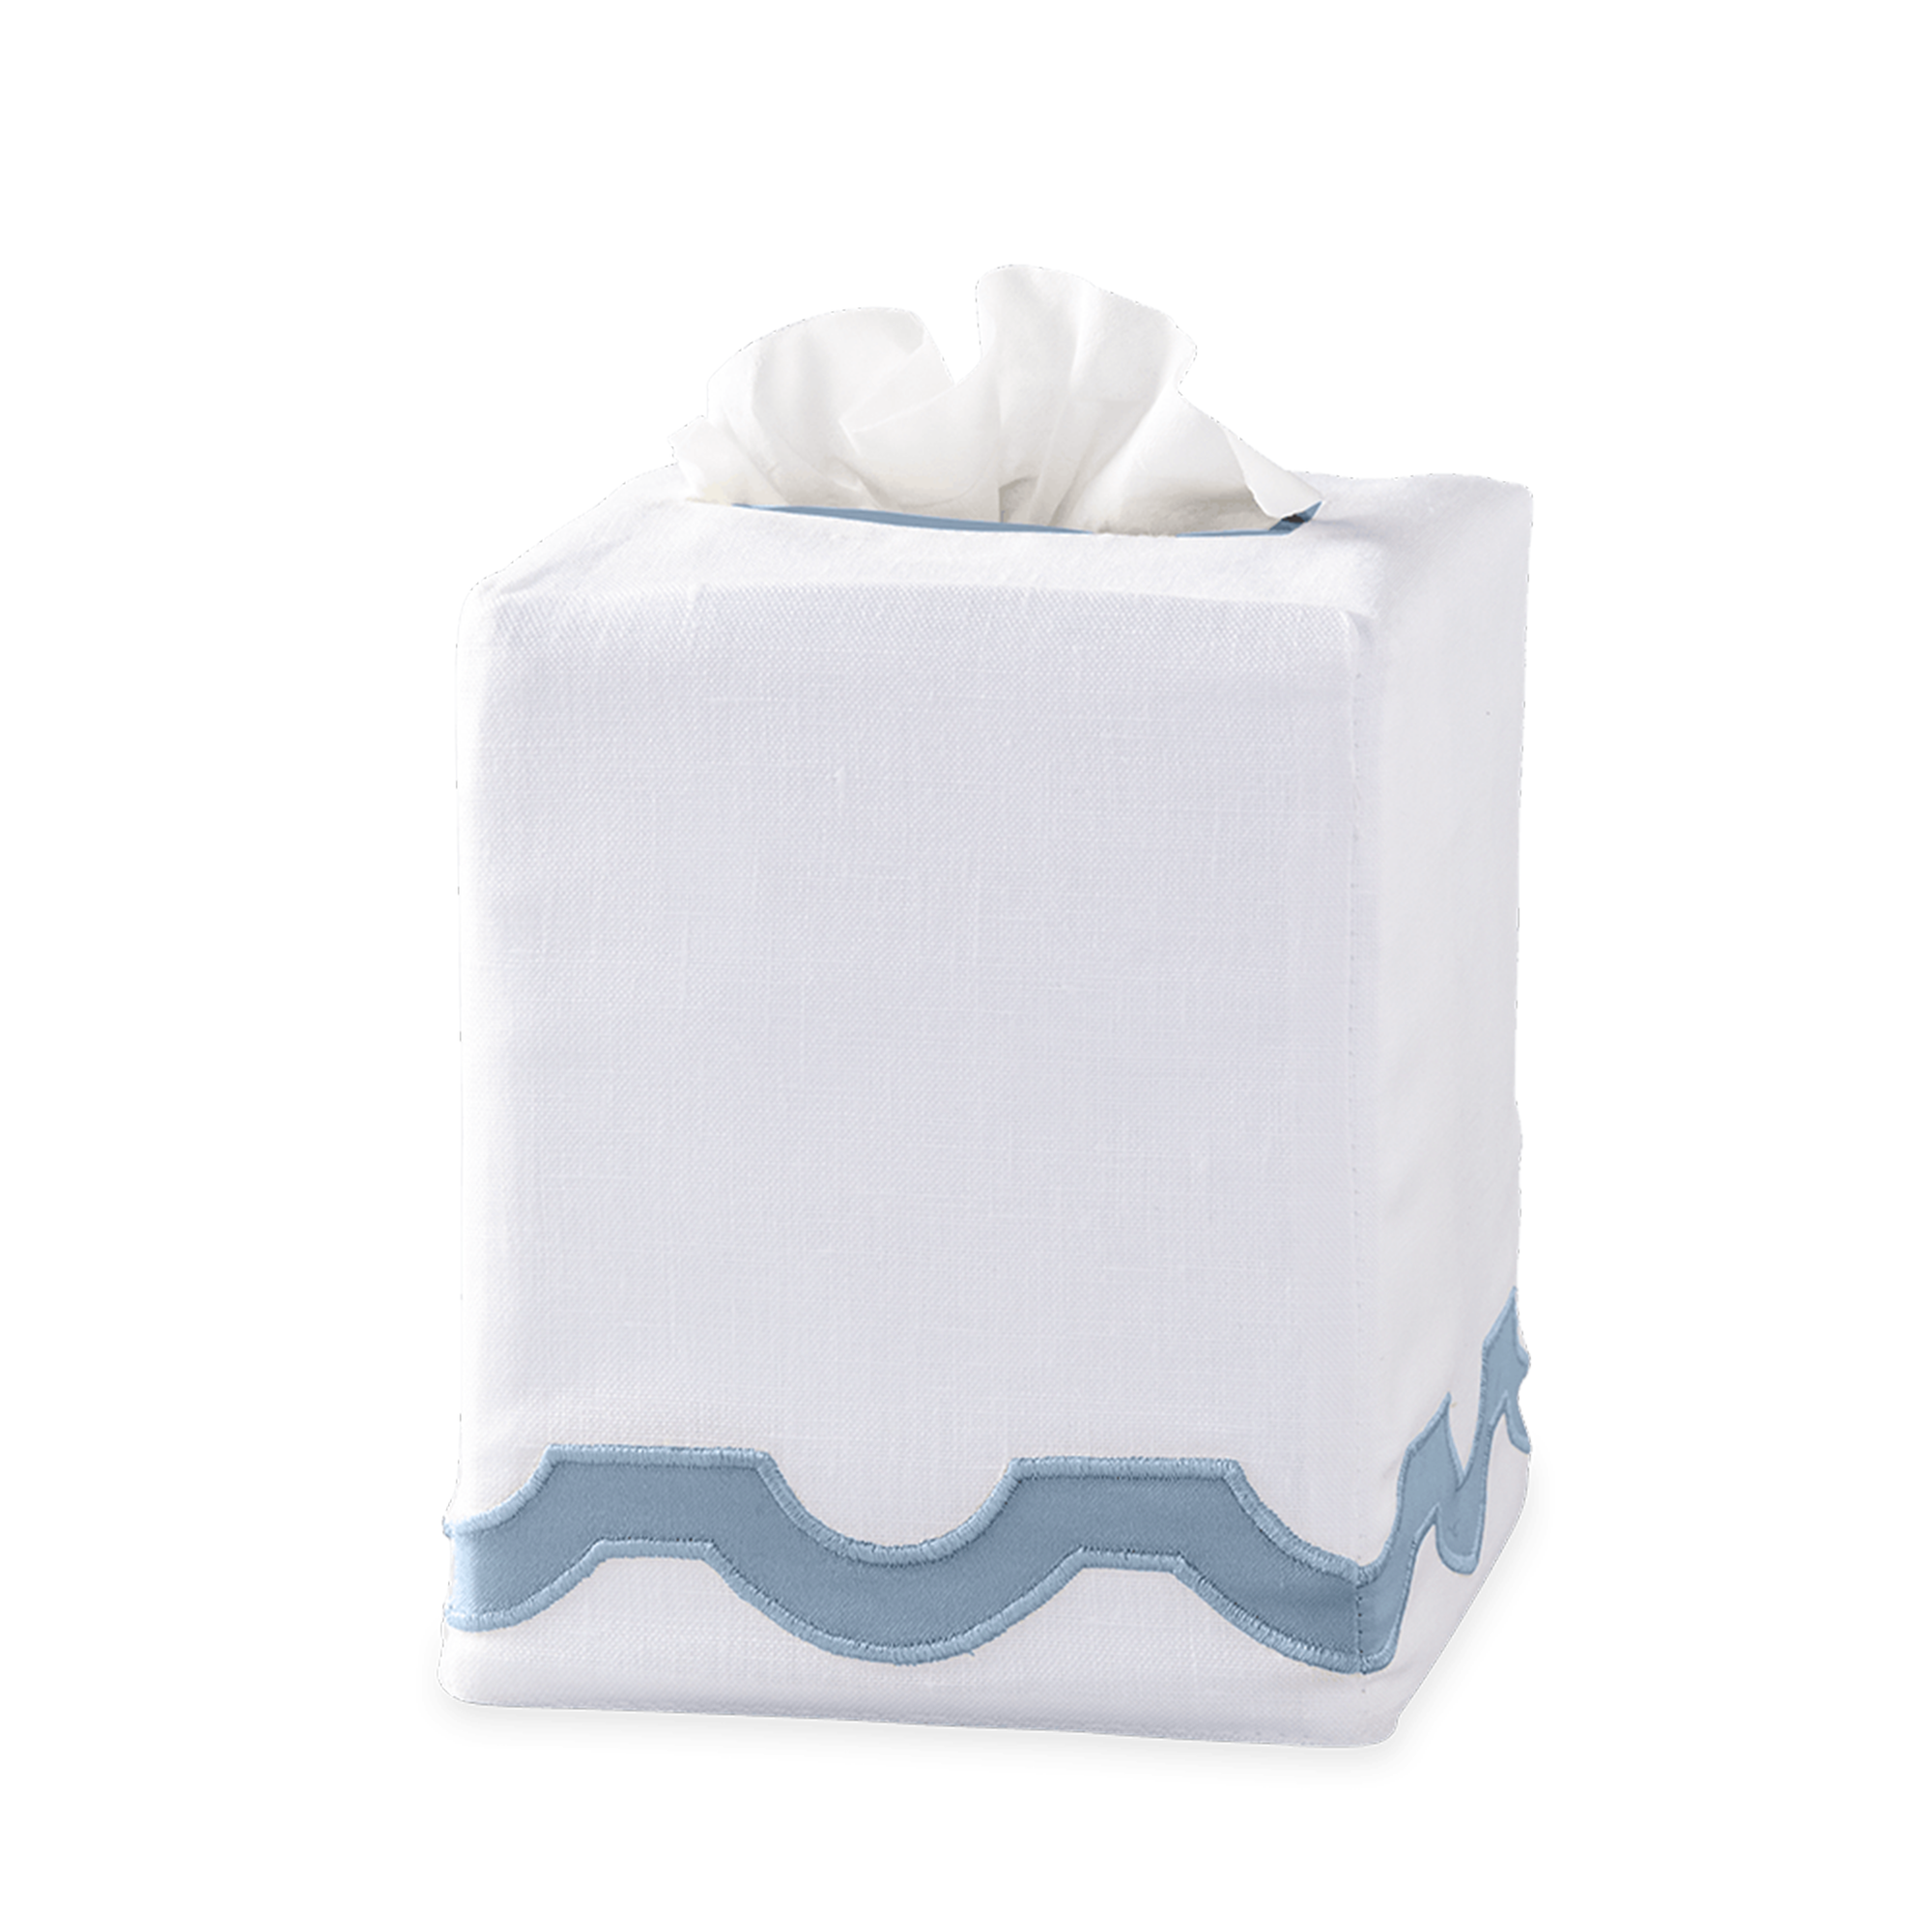 Silo Image of Matouk Mirasol Tissue Box Cover in Hazy Blue Color